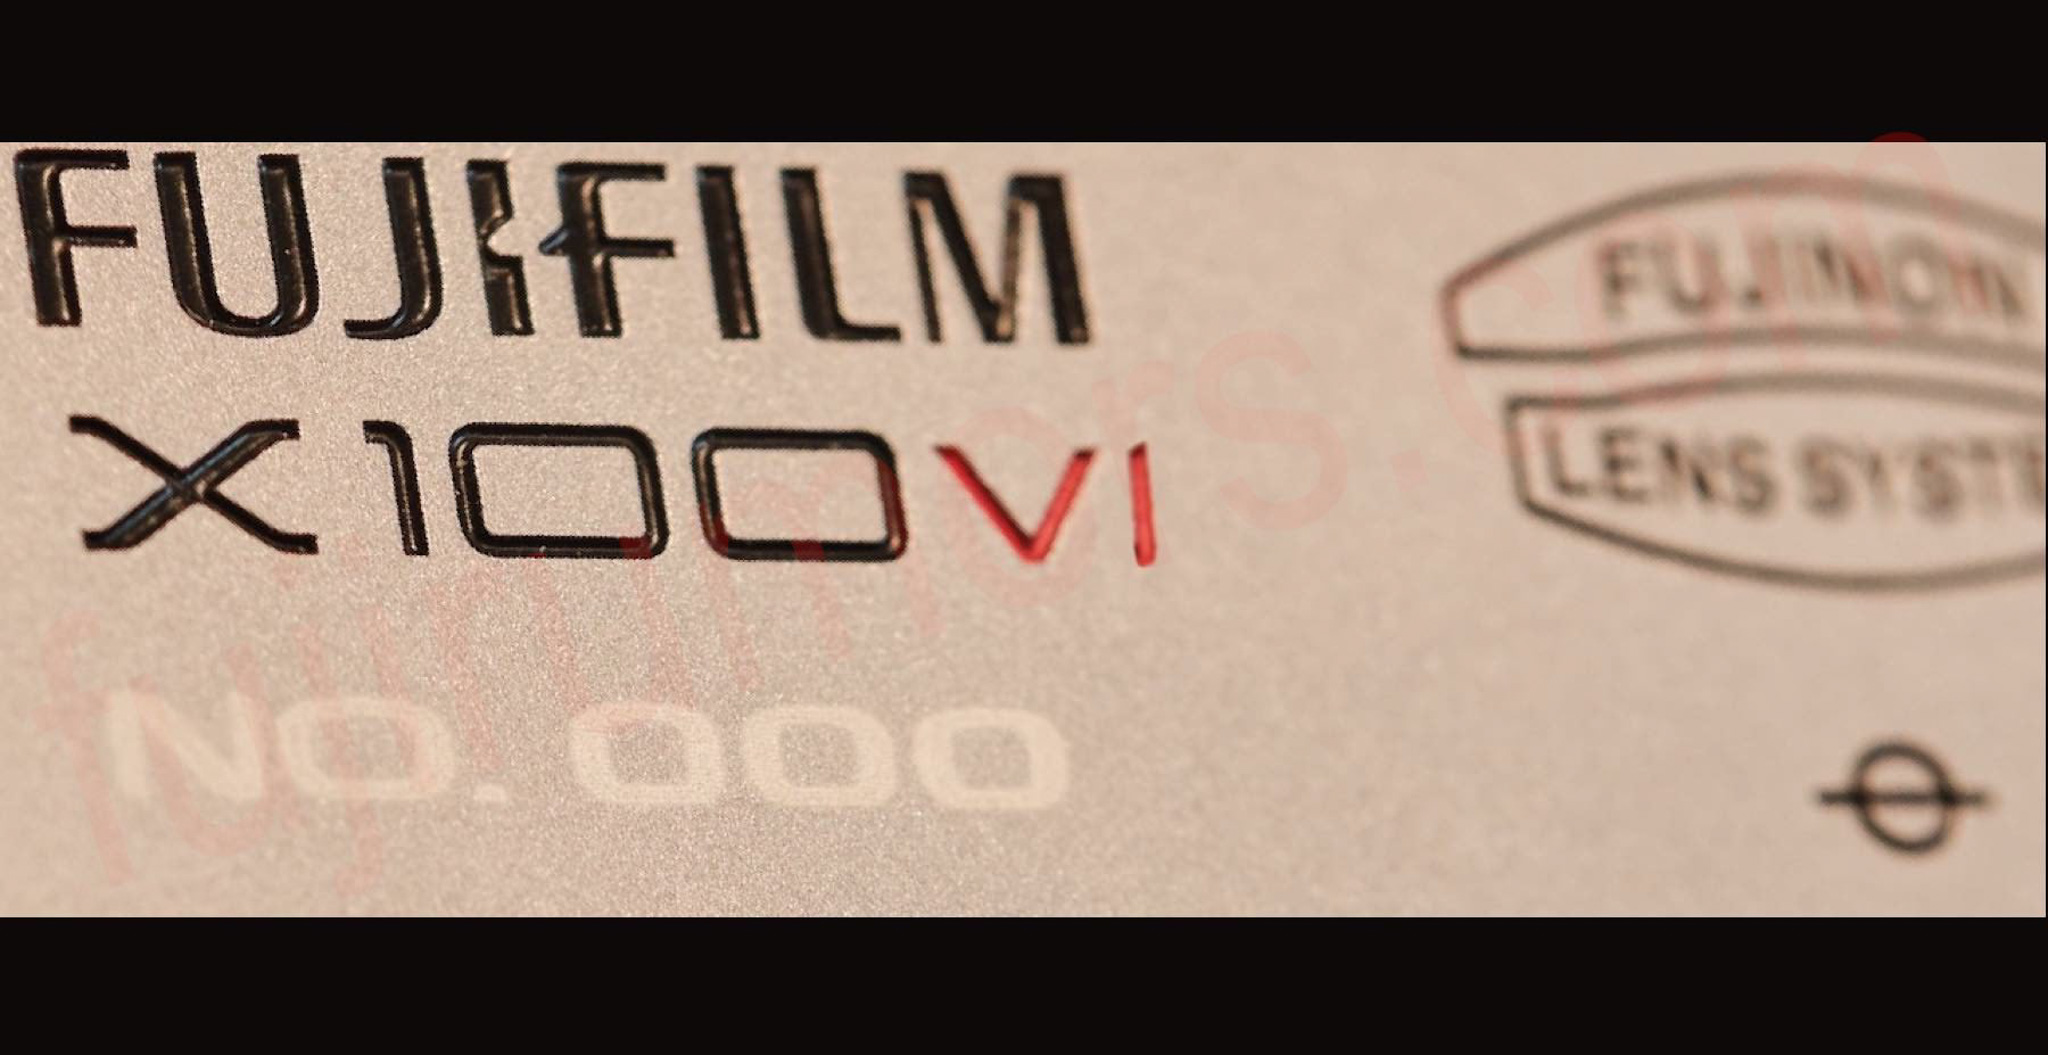 Fujifilm-X100VI-ra-mat-tinhte-2.jpg